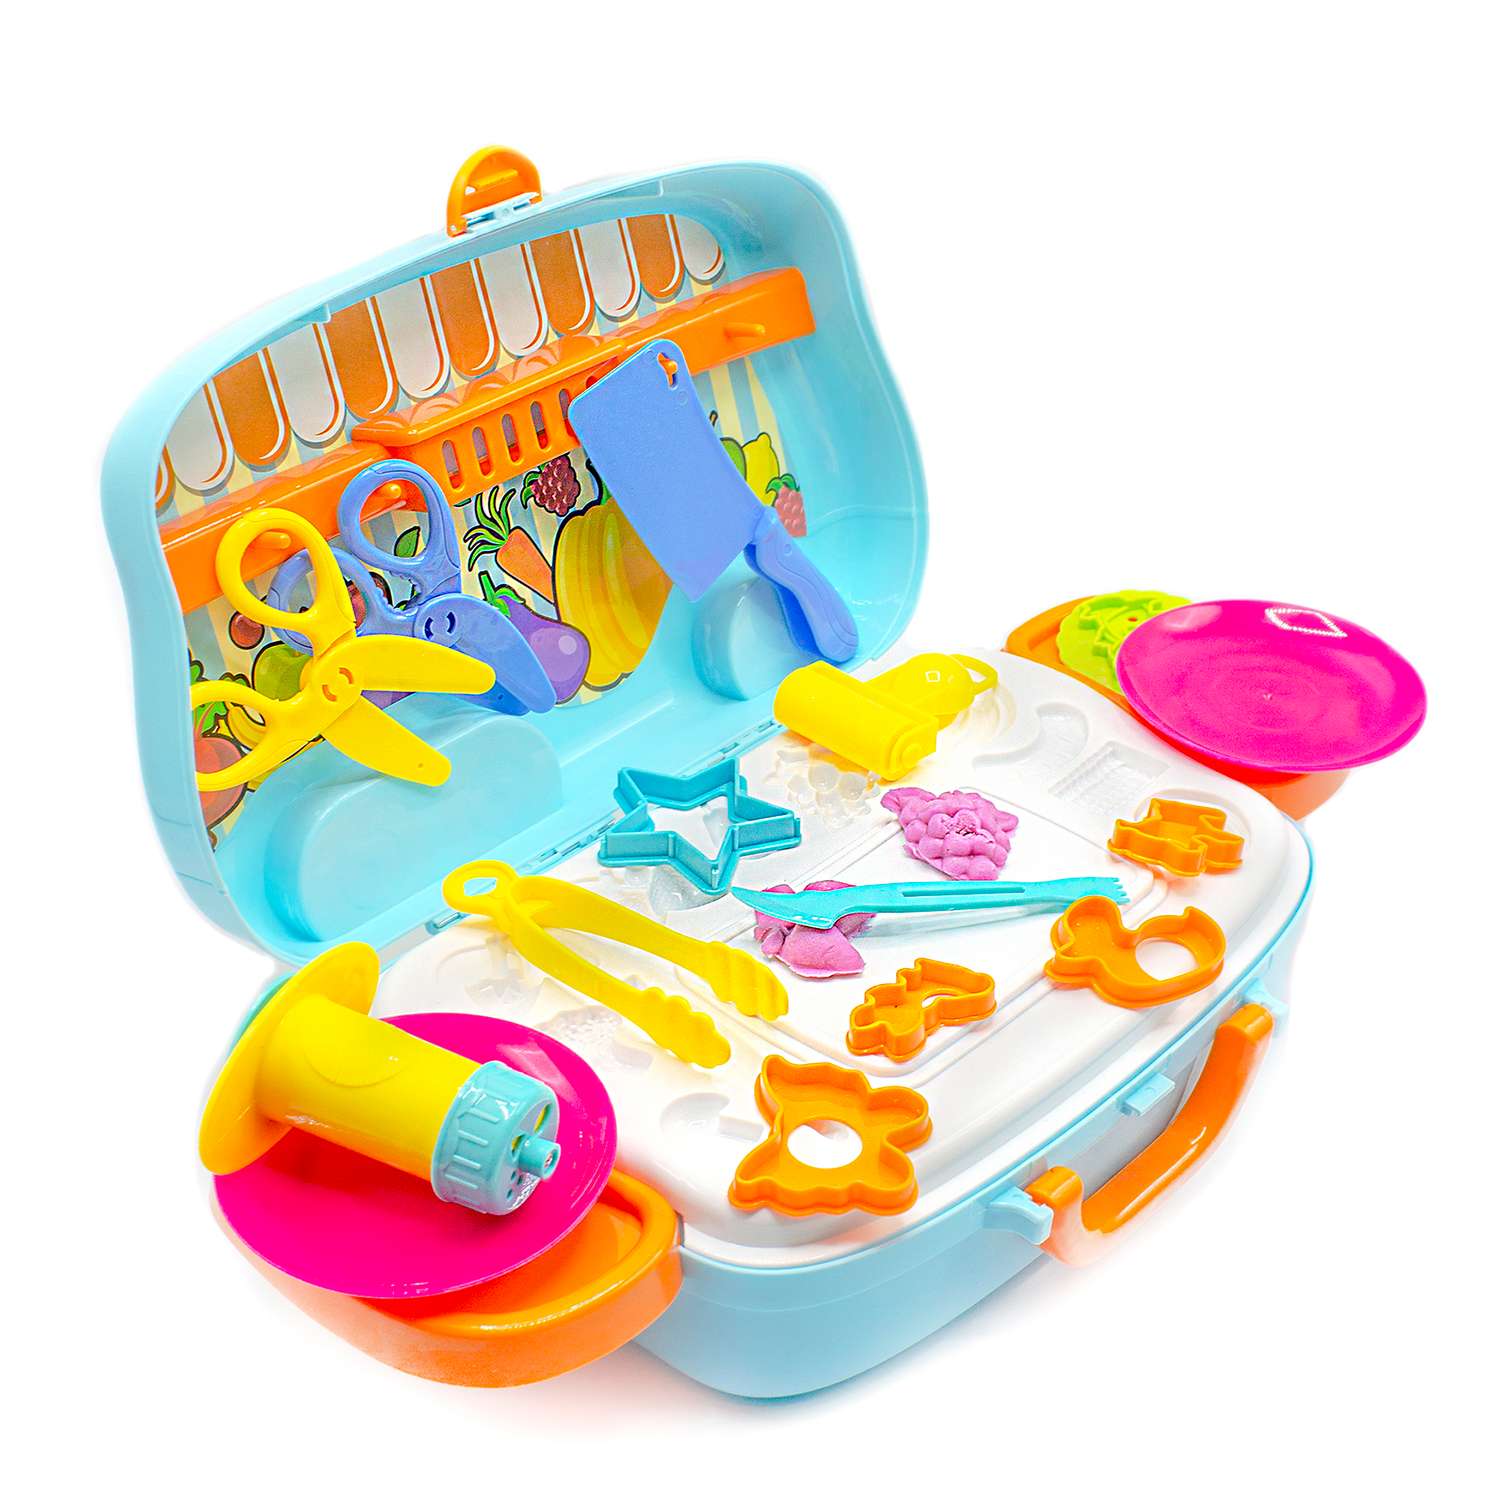 Набор для лепки BAZUMI с мягким пластилином и формами / игровая детская кухня - фото 5